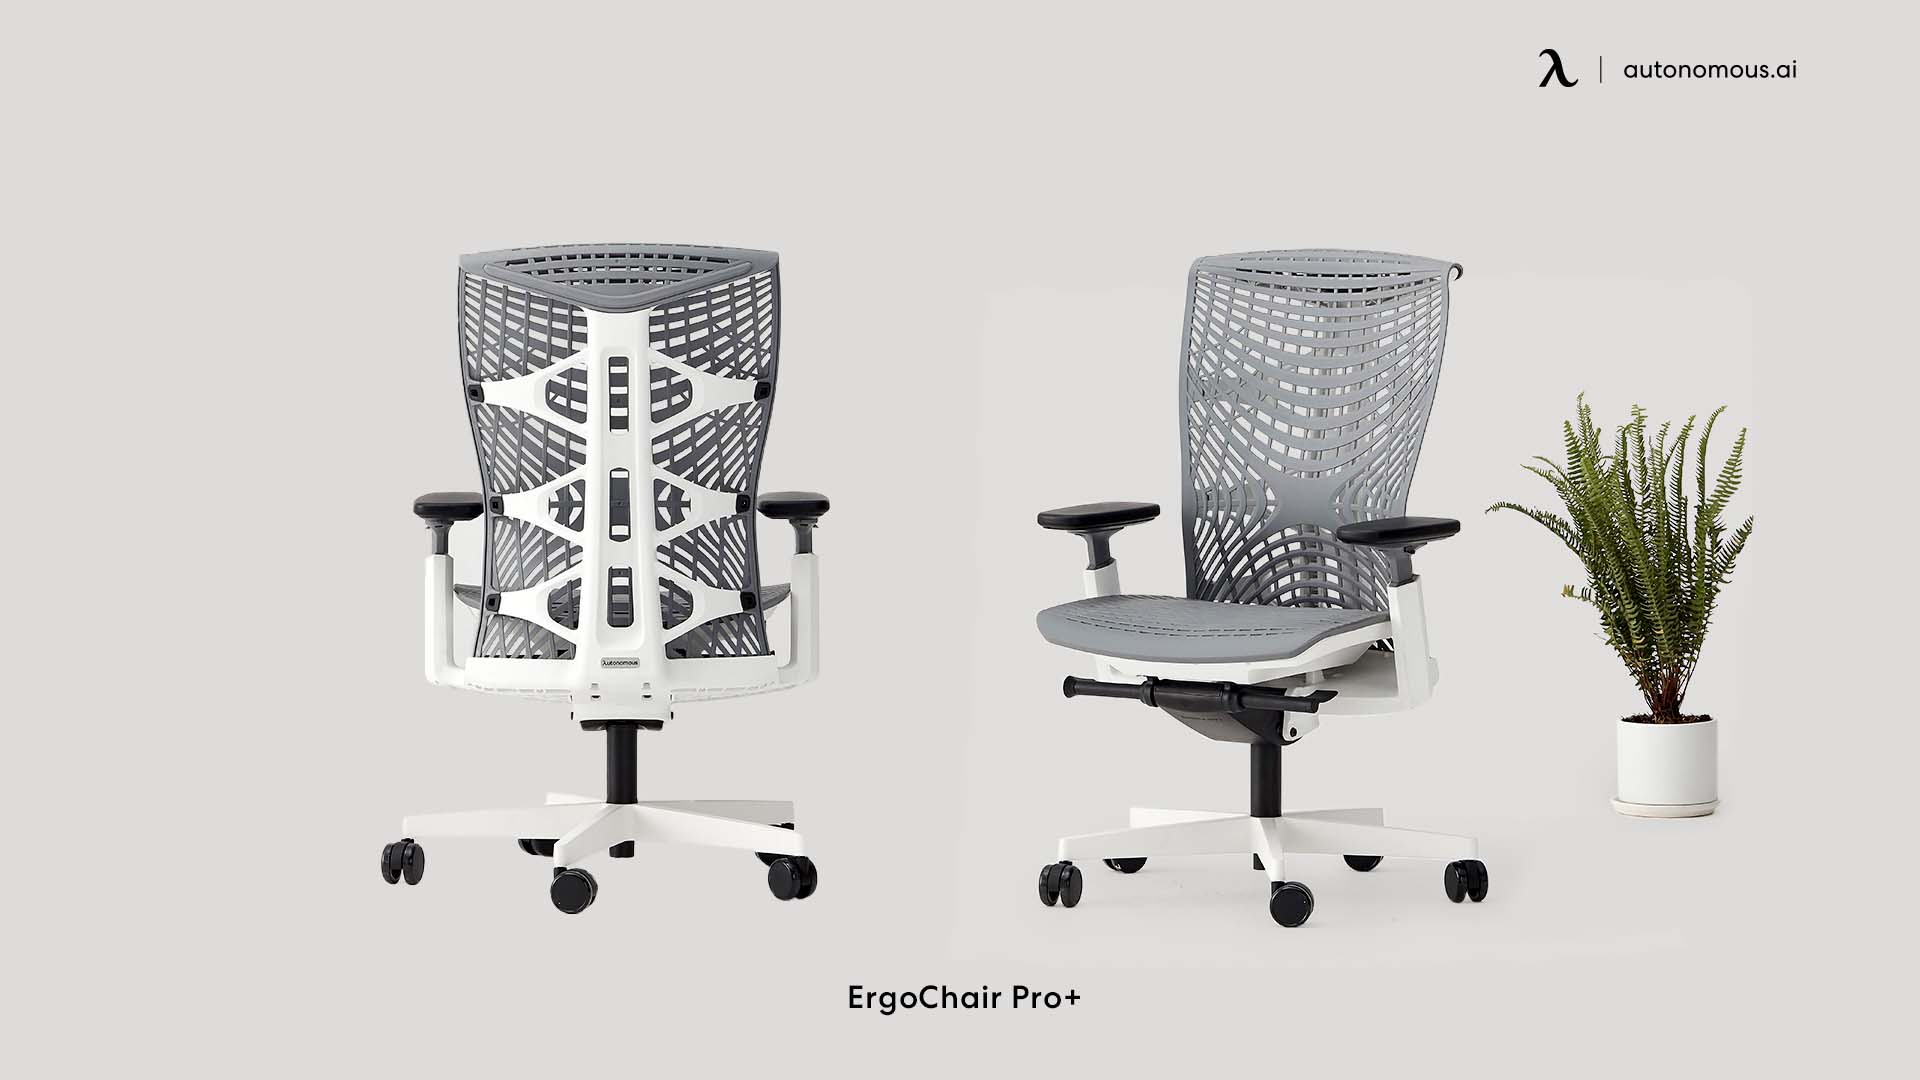 ErgoChair Pro+ mid-back computer chair